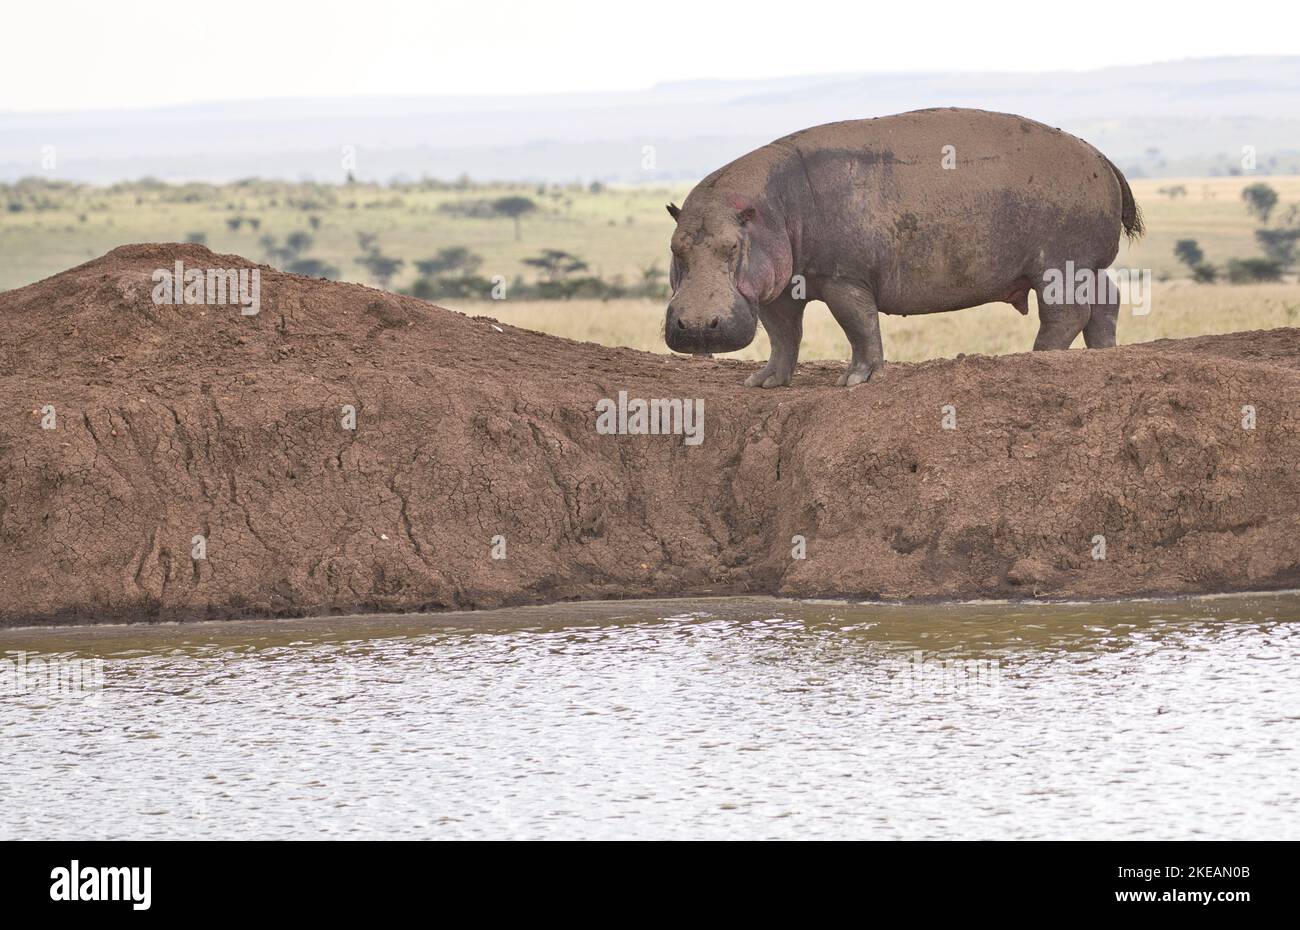 Hippopotame (Hippopotamus amphibius) songe à retourner dans l'eau après avoir paître sur terre Banque D'Images